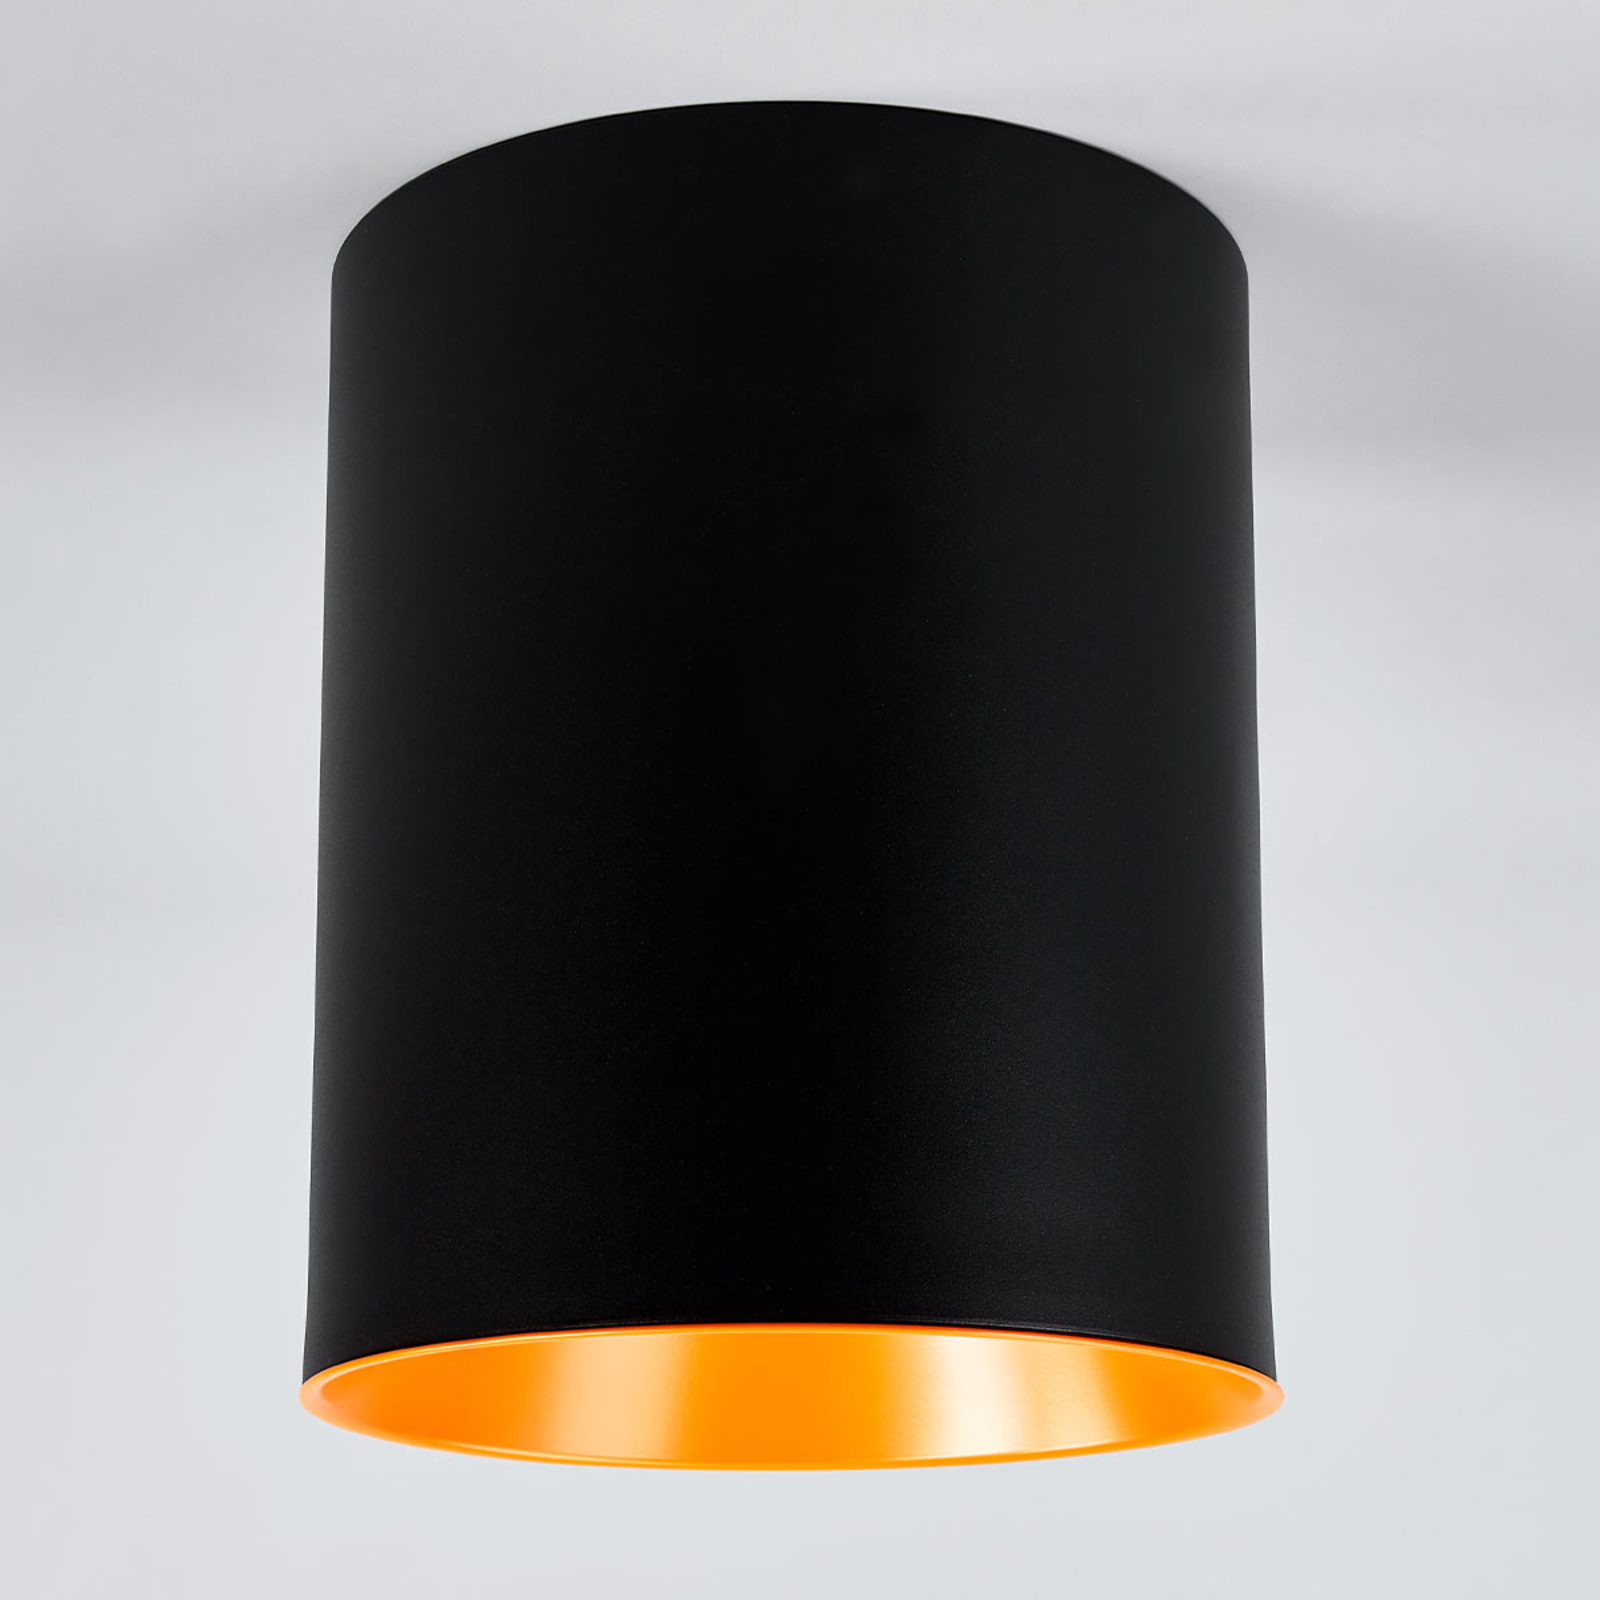 Lampa sufitowa LED Tagora w kształcie cylindra